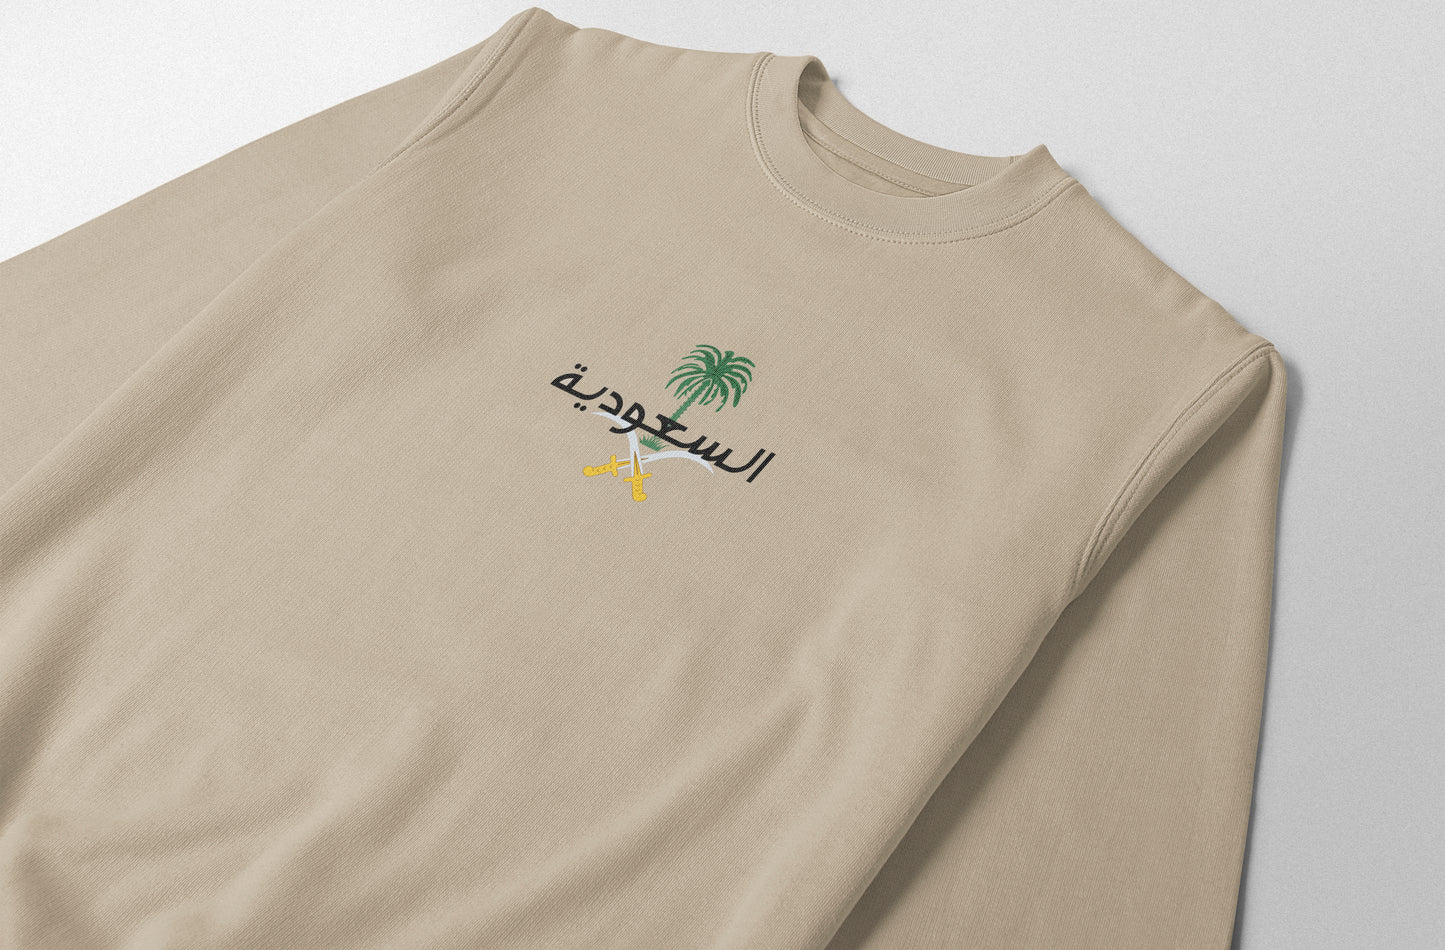 Emblem of Saudi Arabia - Elrayah